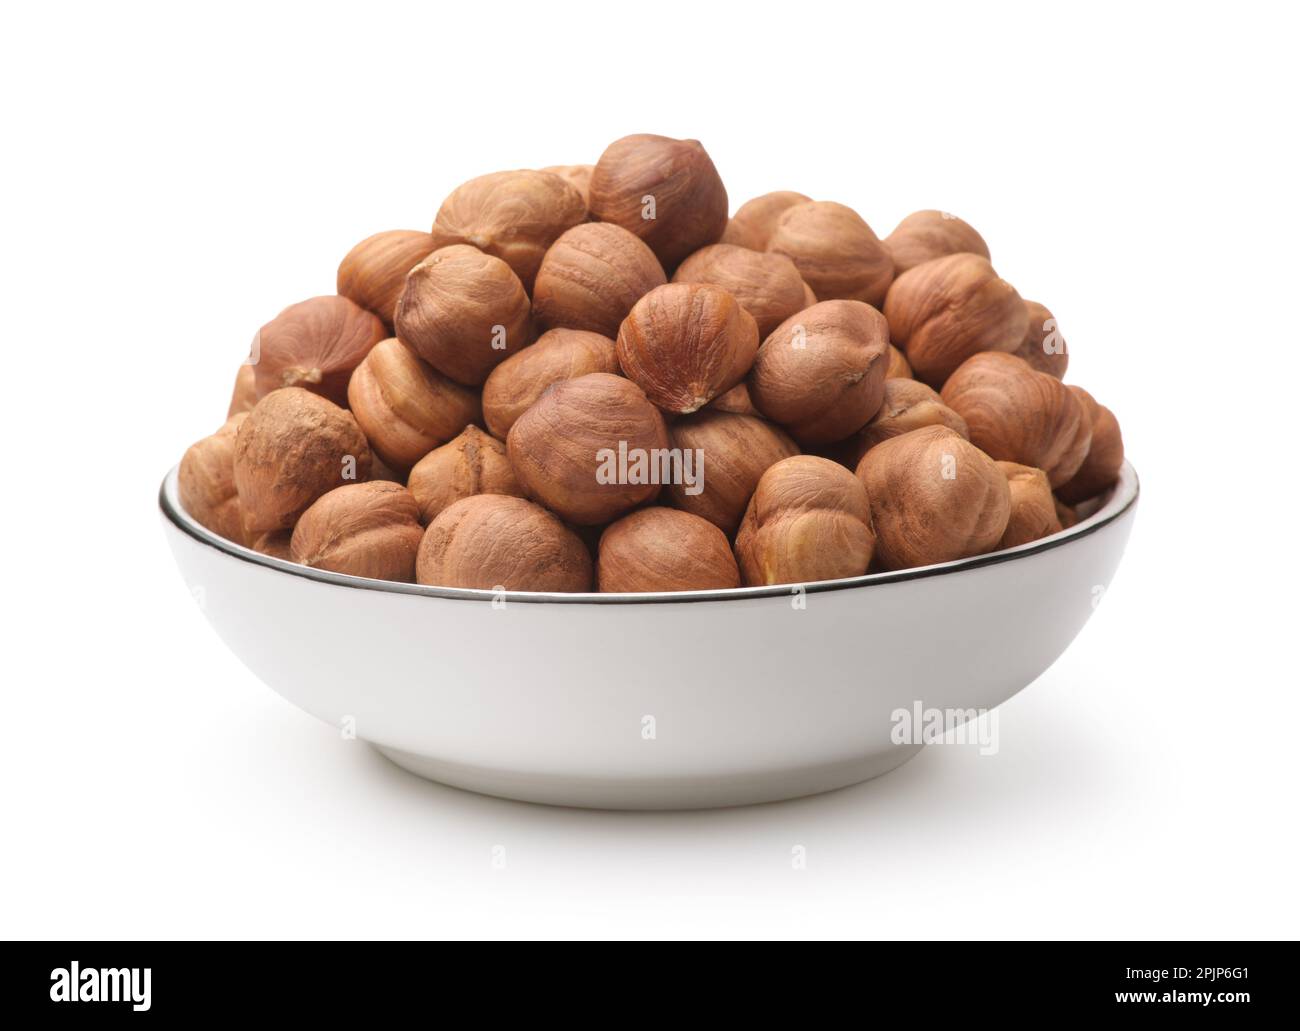 Shelled hazelnut kernels in ceramic bowl isolated on white Stock Photo